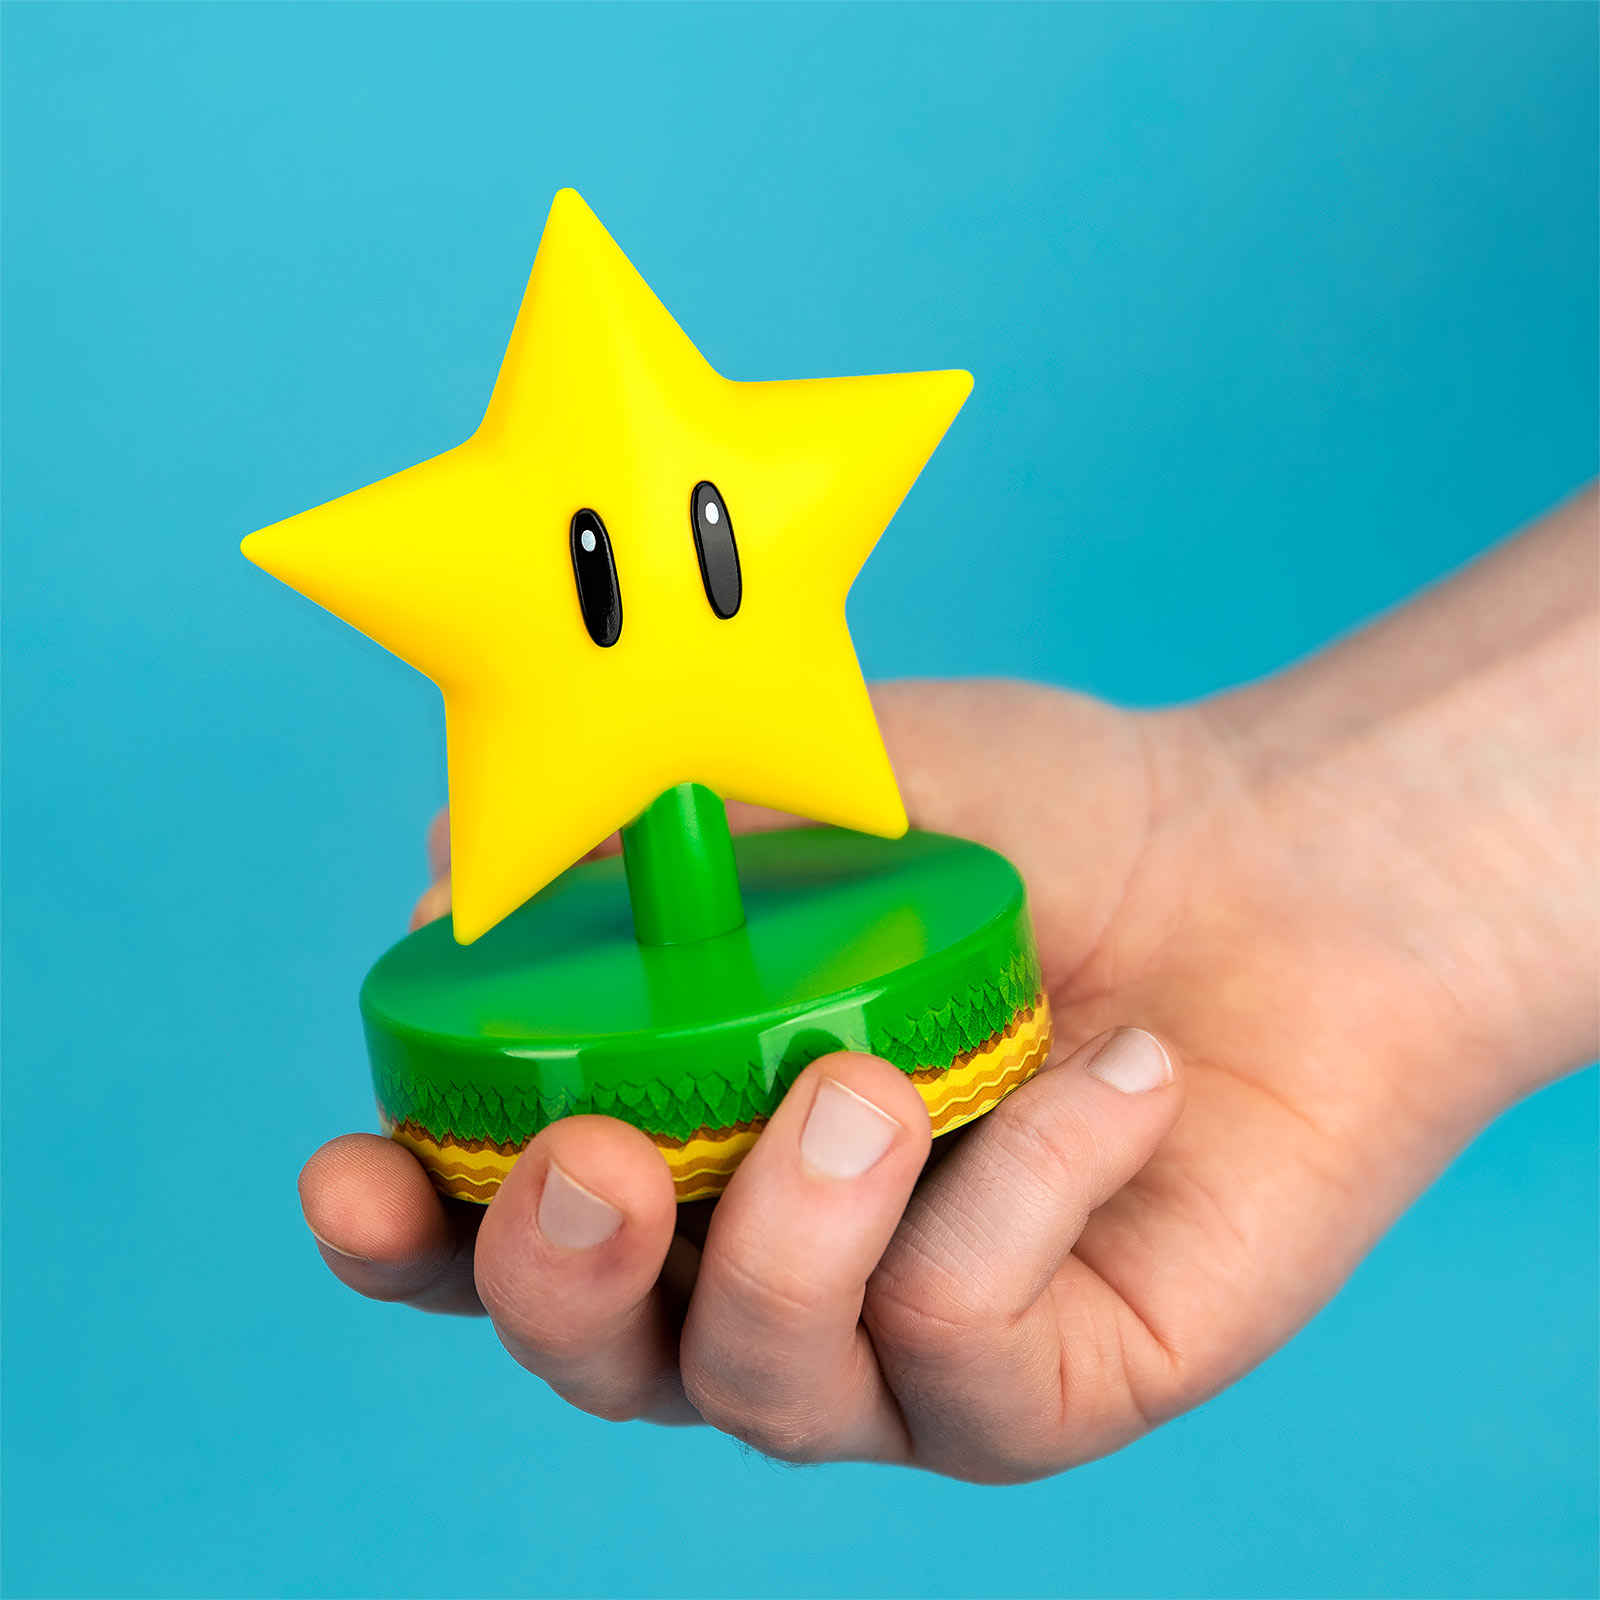 Super Mario - Super étoile Icônes 3D lampe de table